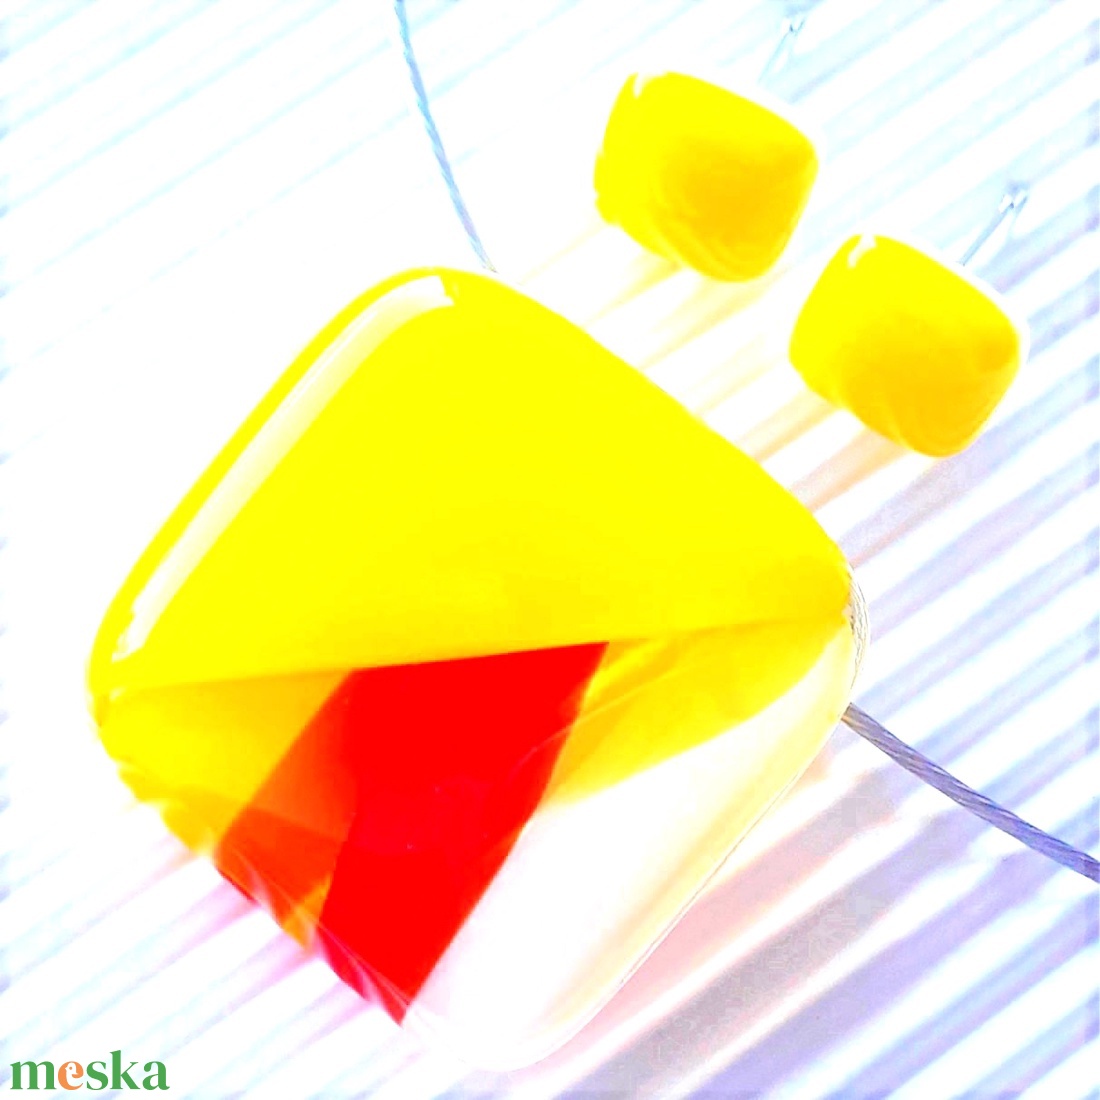 AKCIÓS! - Tűzmadár élénk sárgában rombusz üveg medál és kocka fülbevaló ORVOSI FÉM bedugón, minimal, üvegékszer - ékszer - ékszerszett - Meska.hu